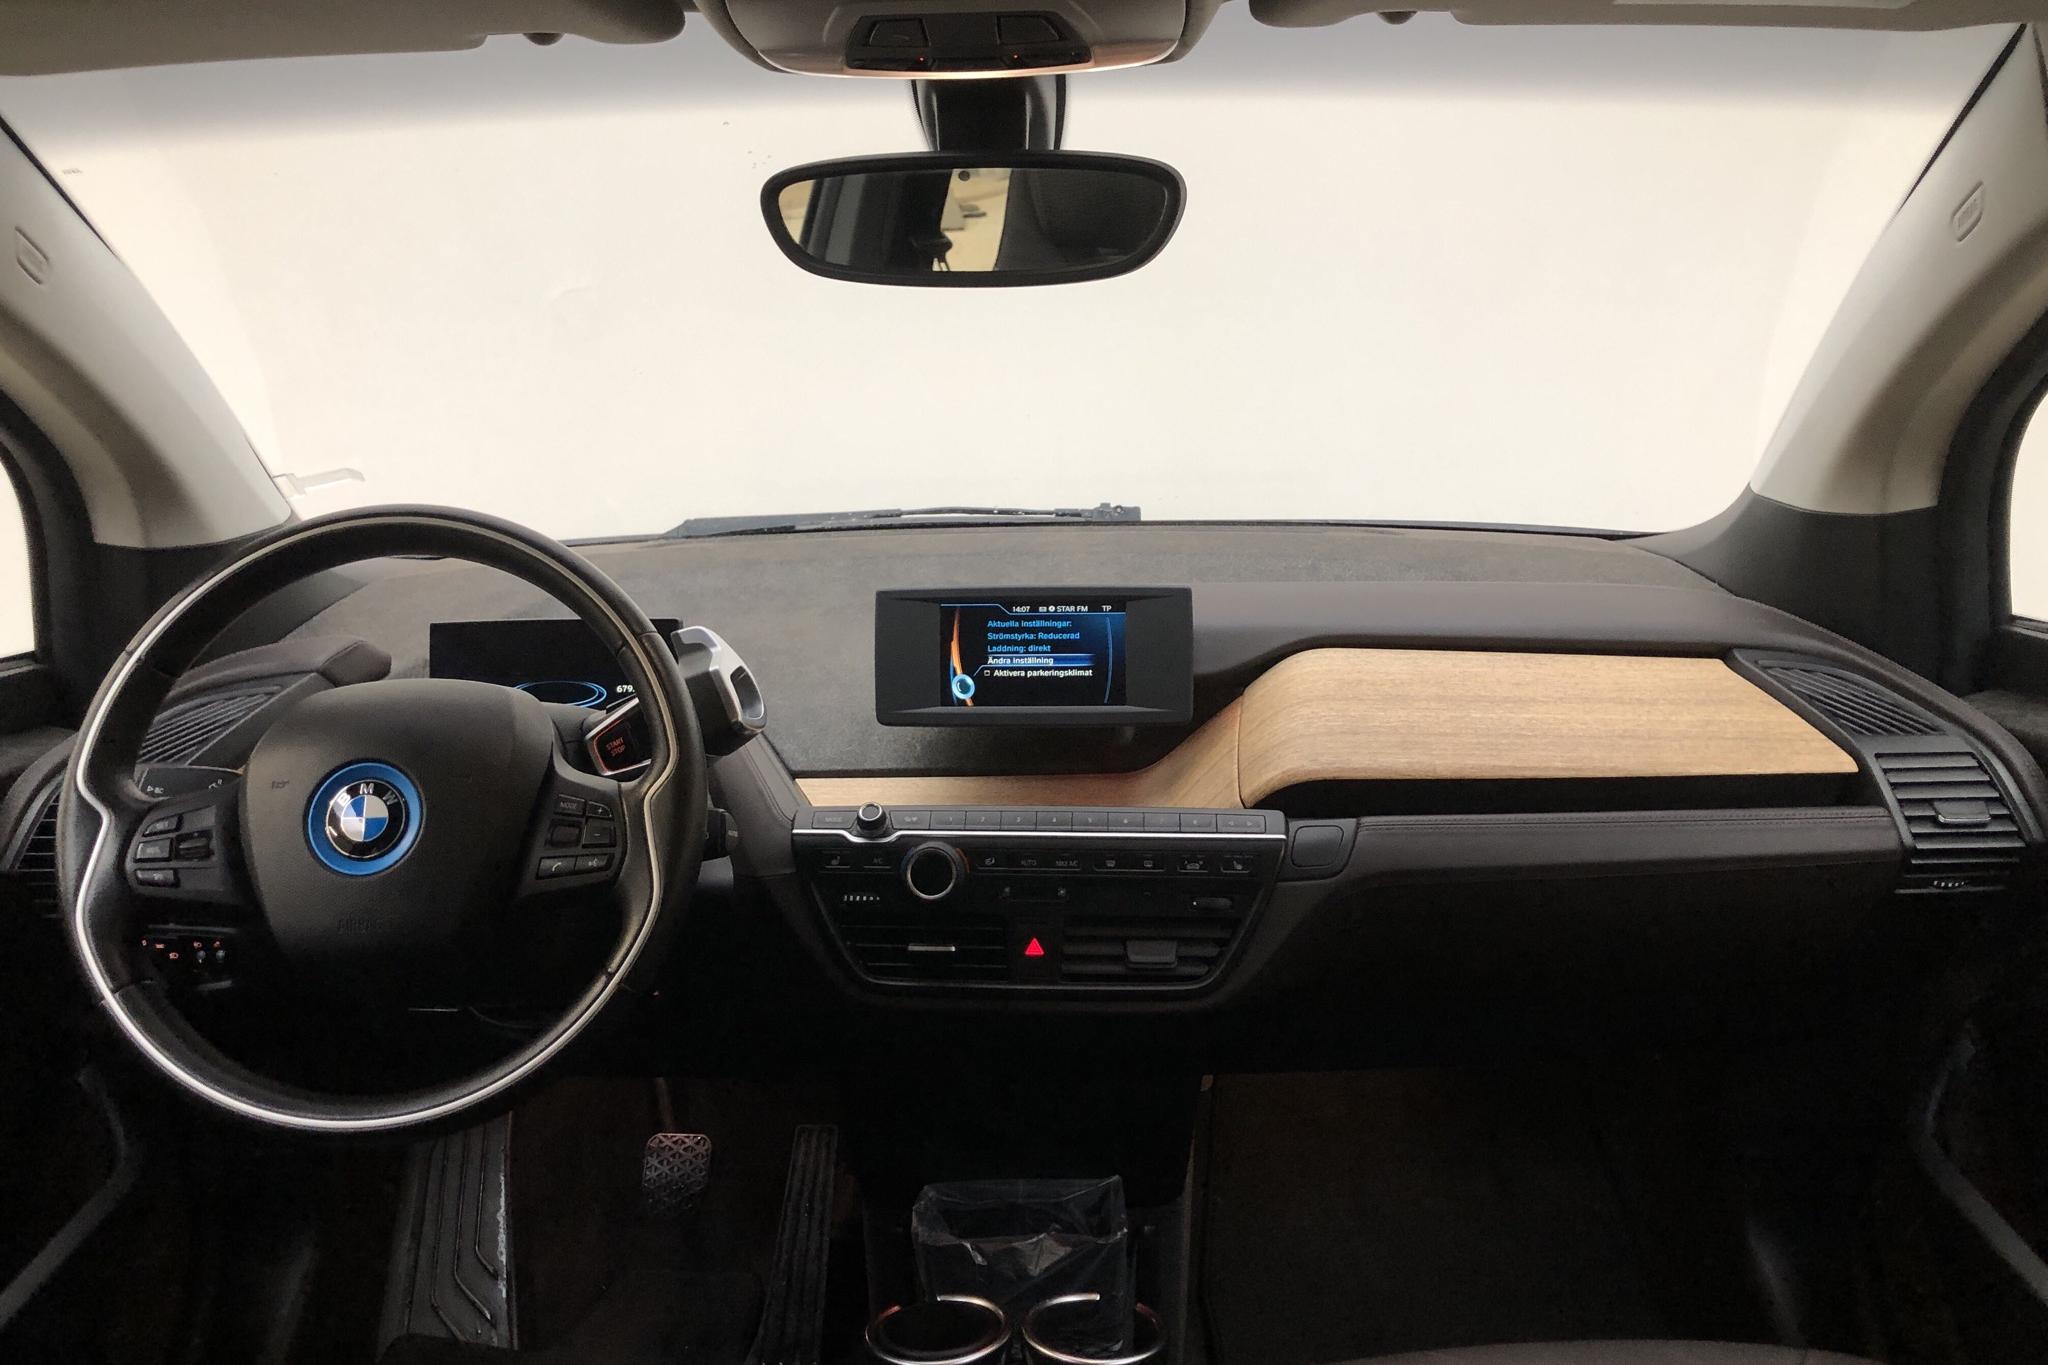 BMW i3 60Ah REX, I01 (170hk) - 131 530 km - Automatic - gray - 2014